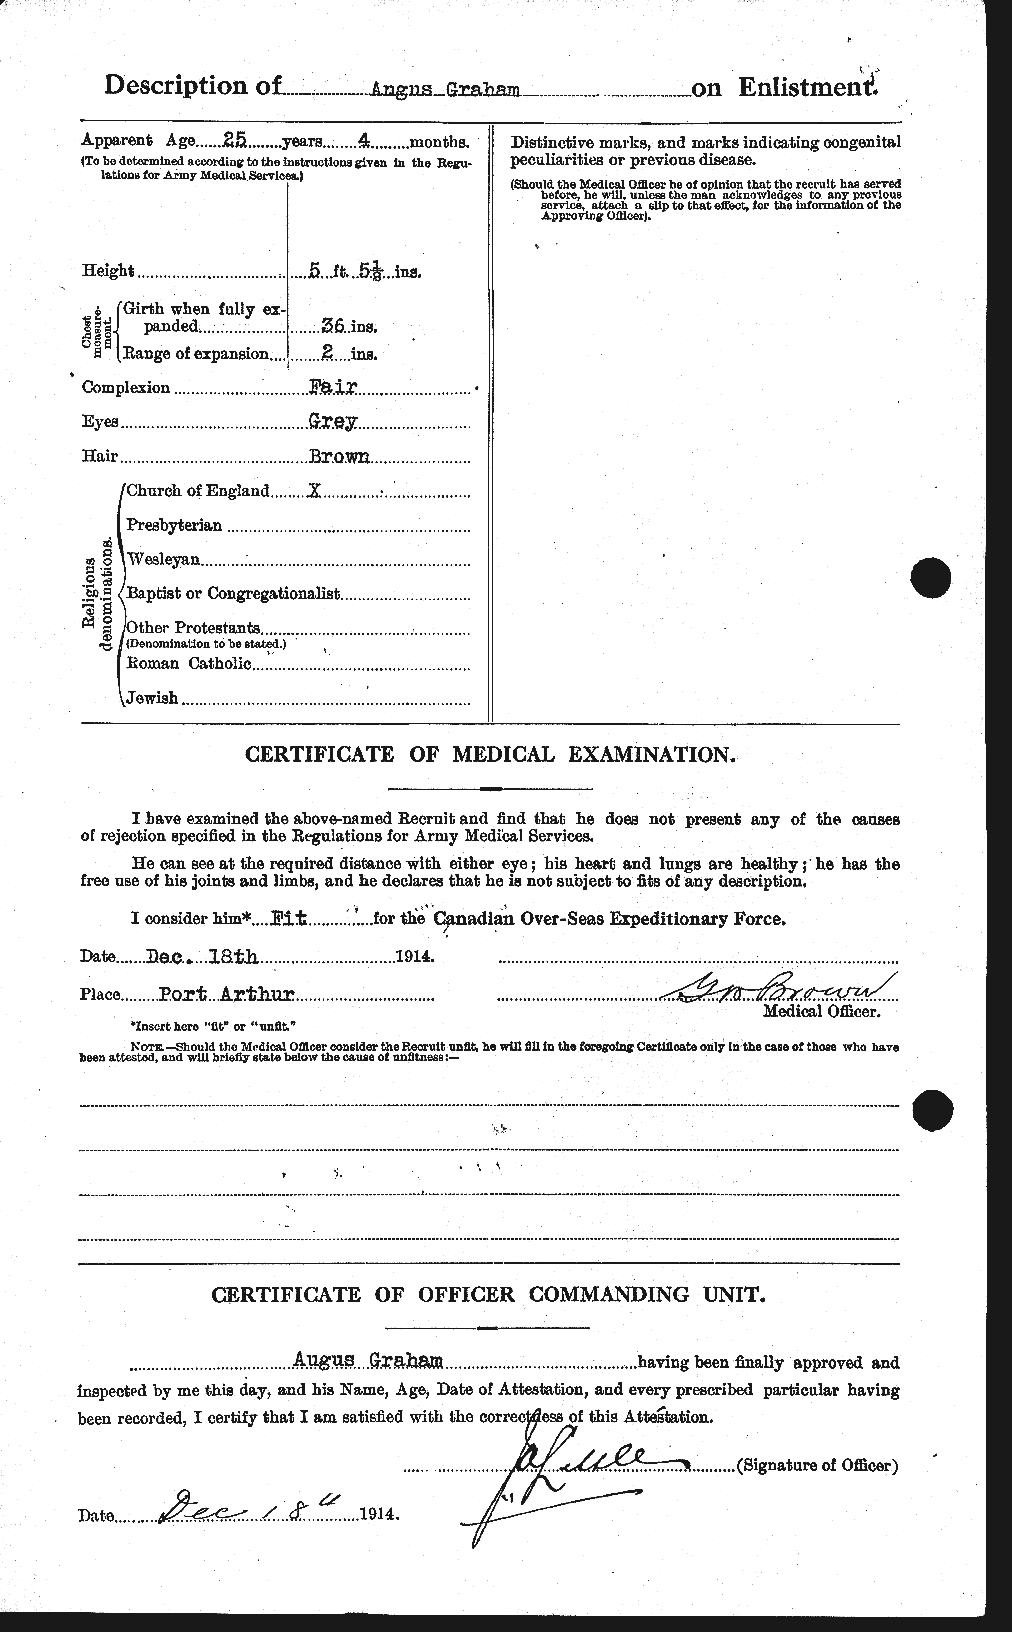 Dossiers du Personnel de la Première Guerre mondiale - CEC 359621b